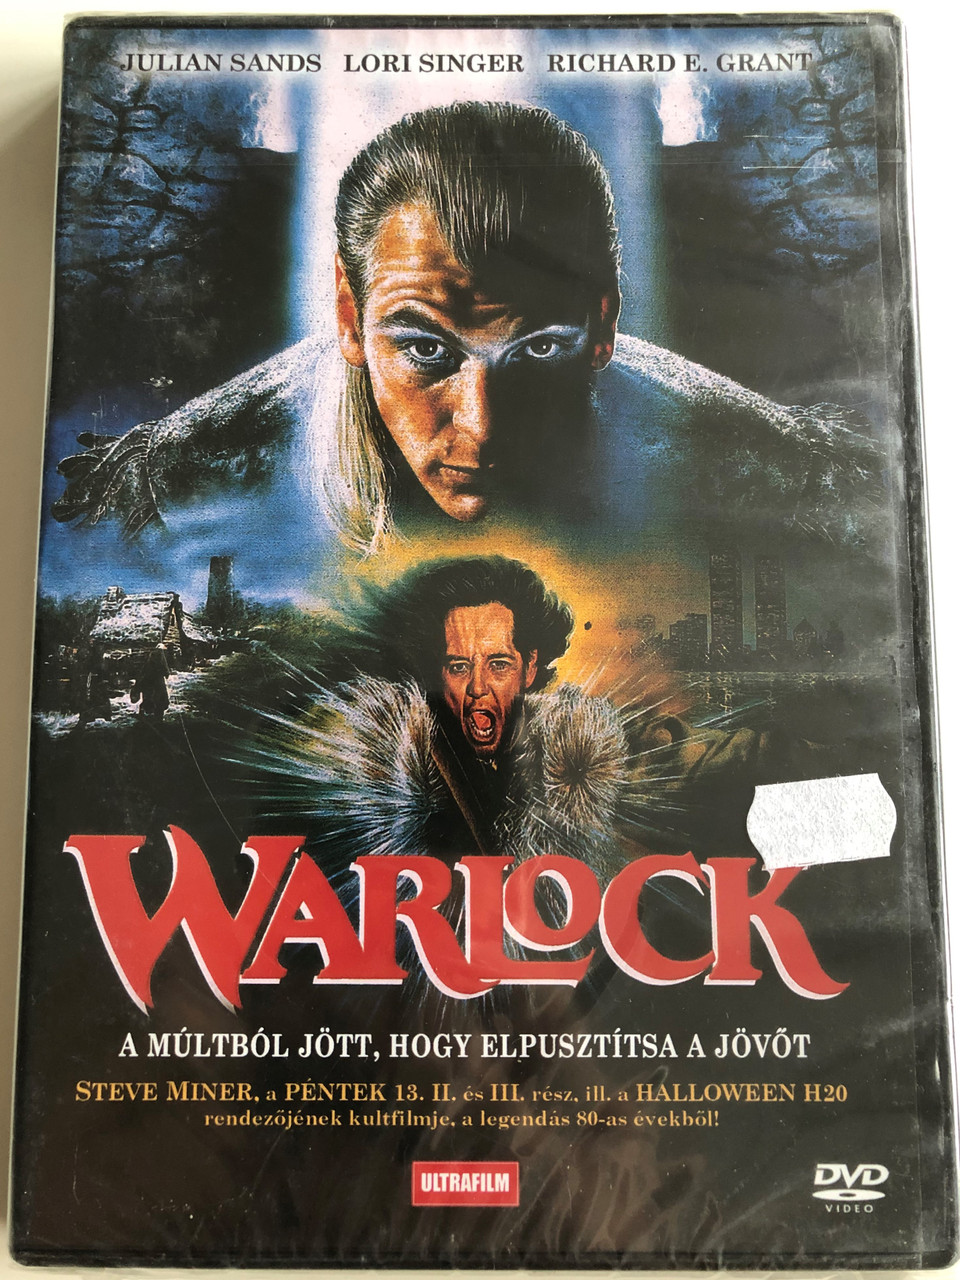 Warlock DVD 1989 A Múltból jött, hogy elpusztítsa a jövőt / Directed by  Steve Miner / Starring: Julian Sands, Lori Singer, Richard E. Grant -  bibleinmylanguage